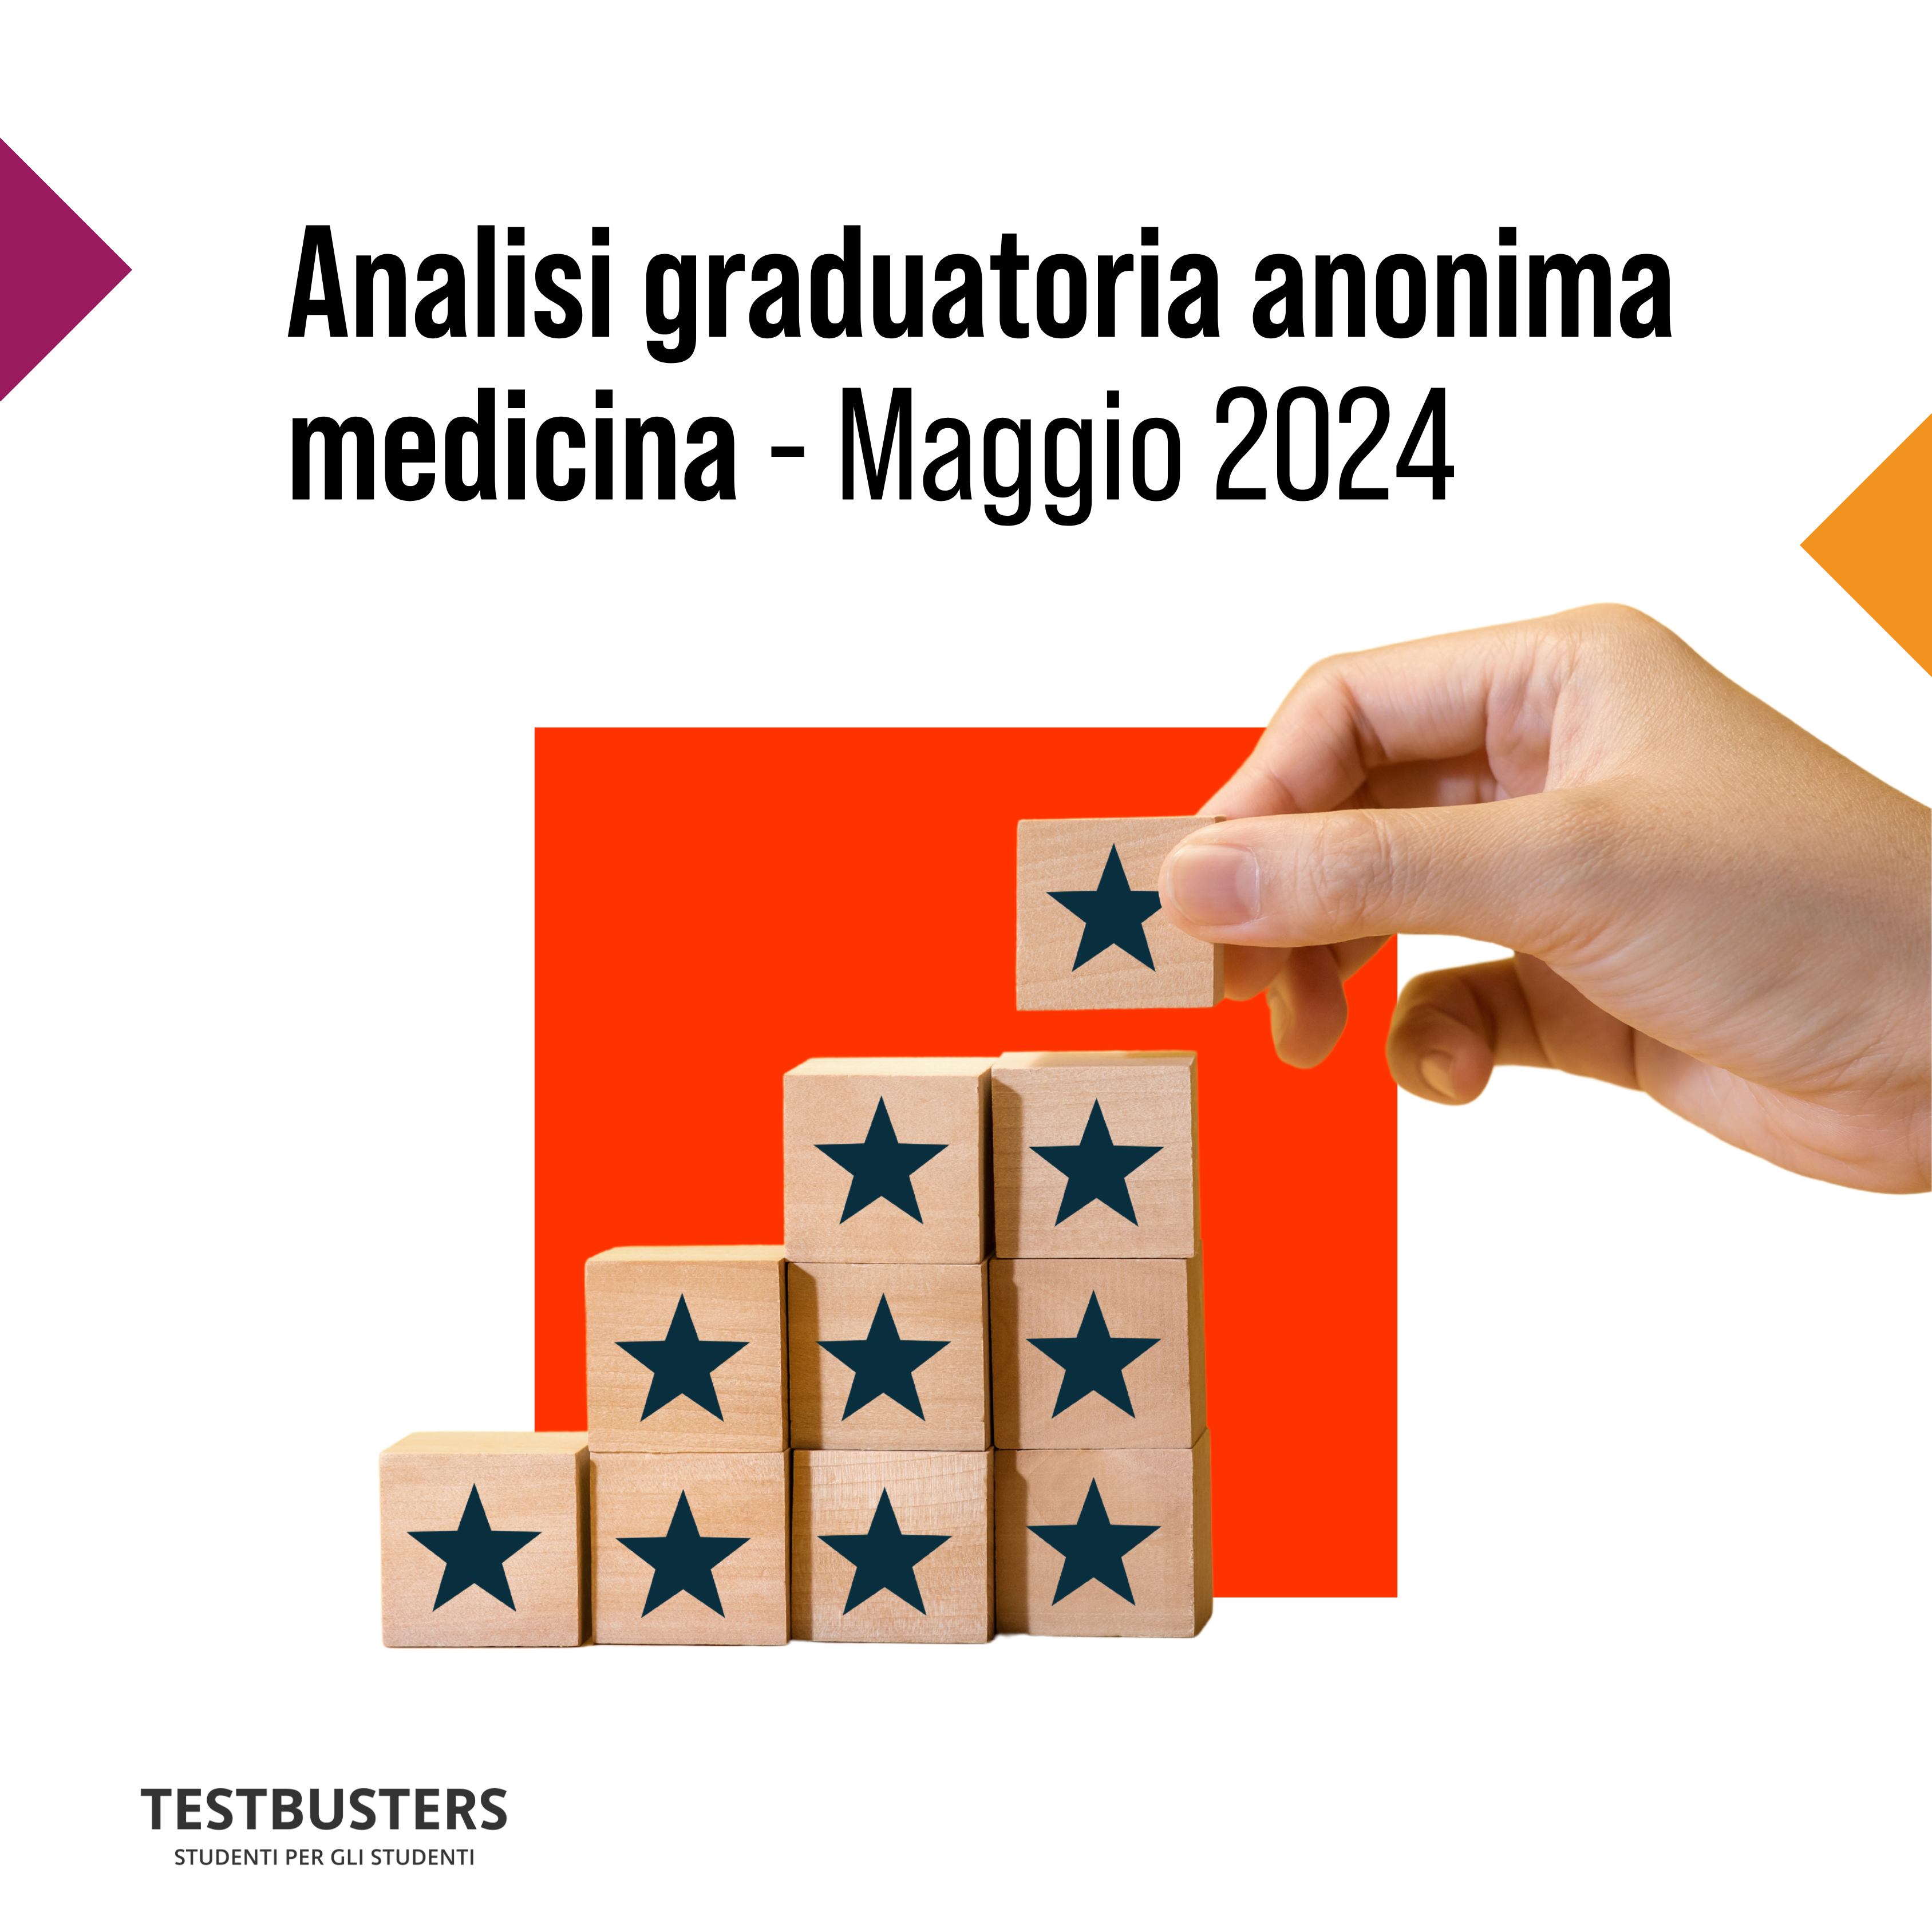 Analisi graduatoria anonima medicina - Maggio 2024